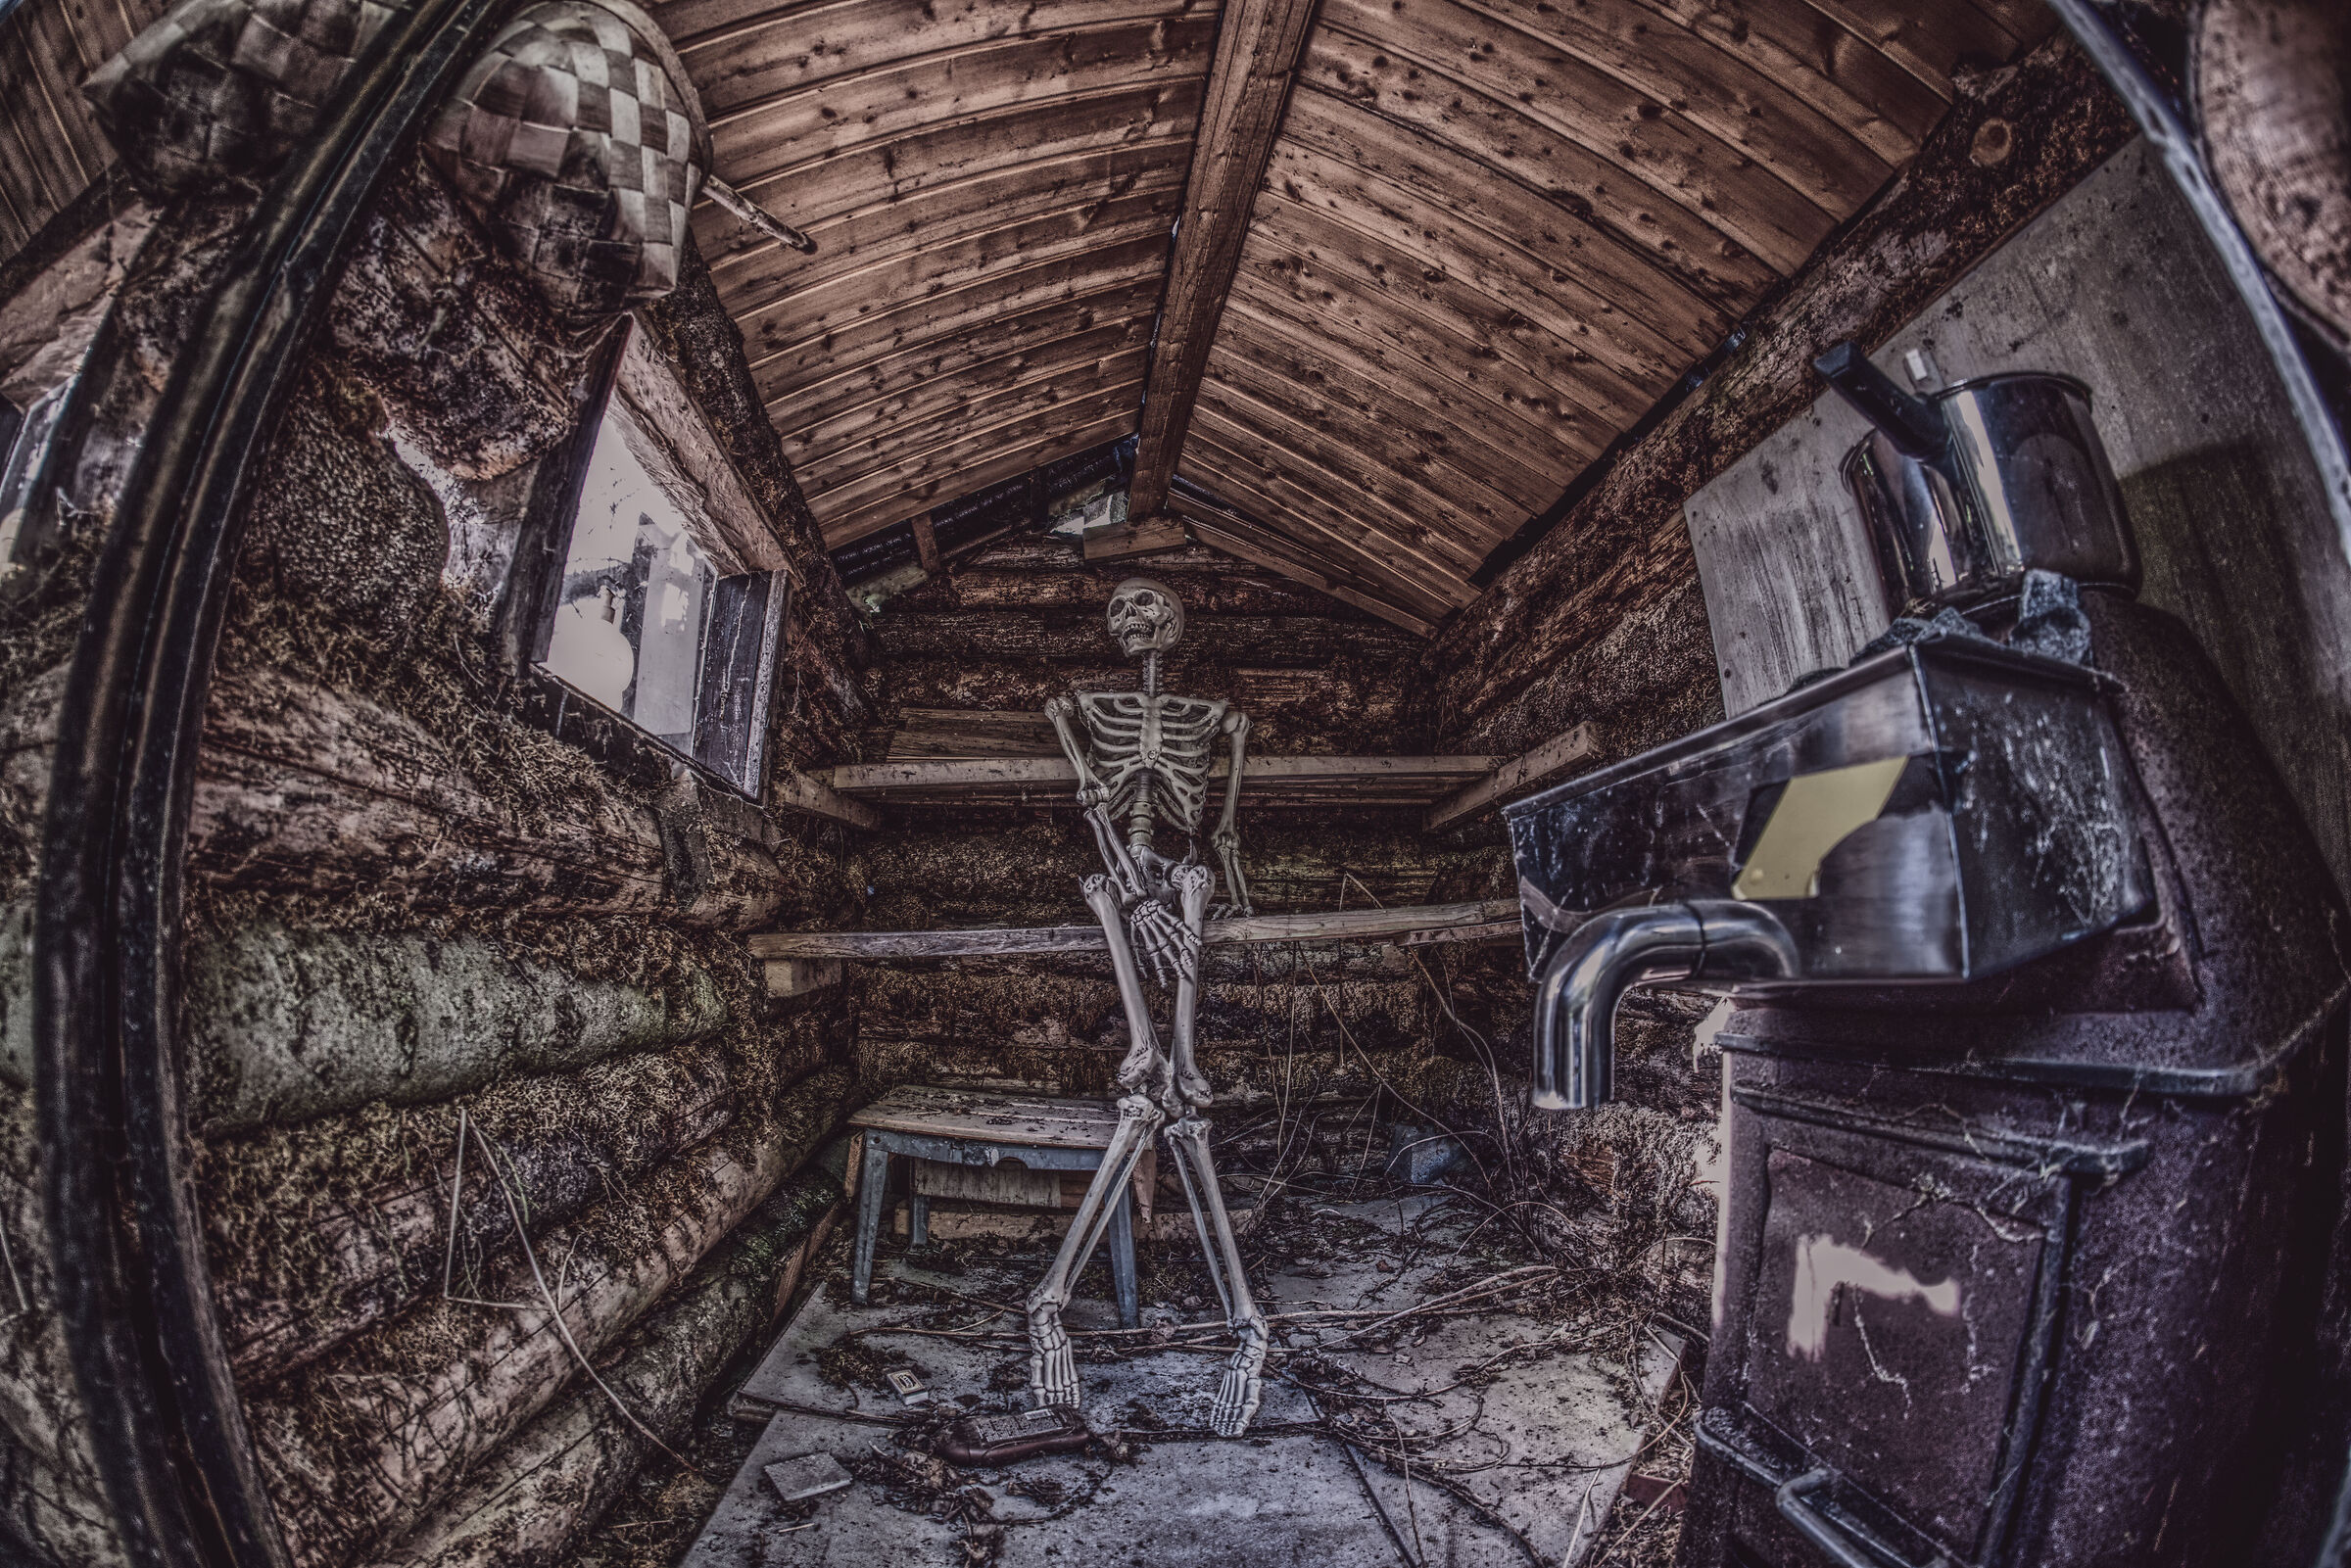 Lo scheletro ha bisogno di un po 'di privacy nella sauna...